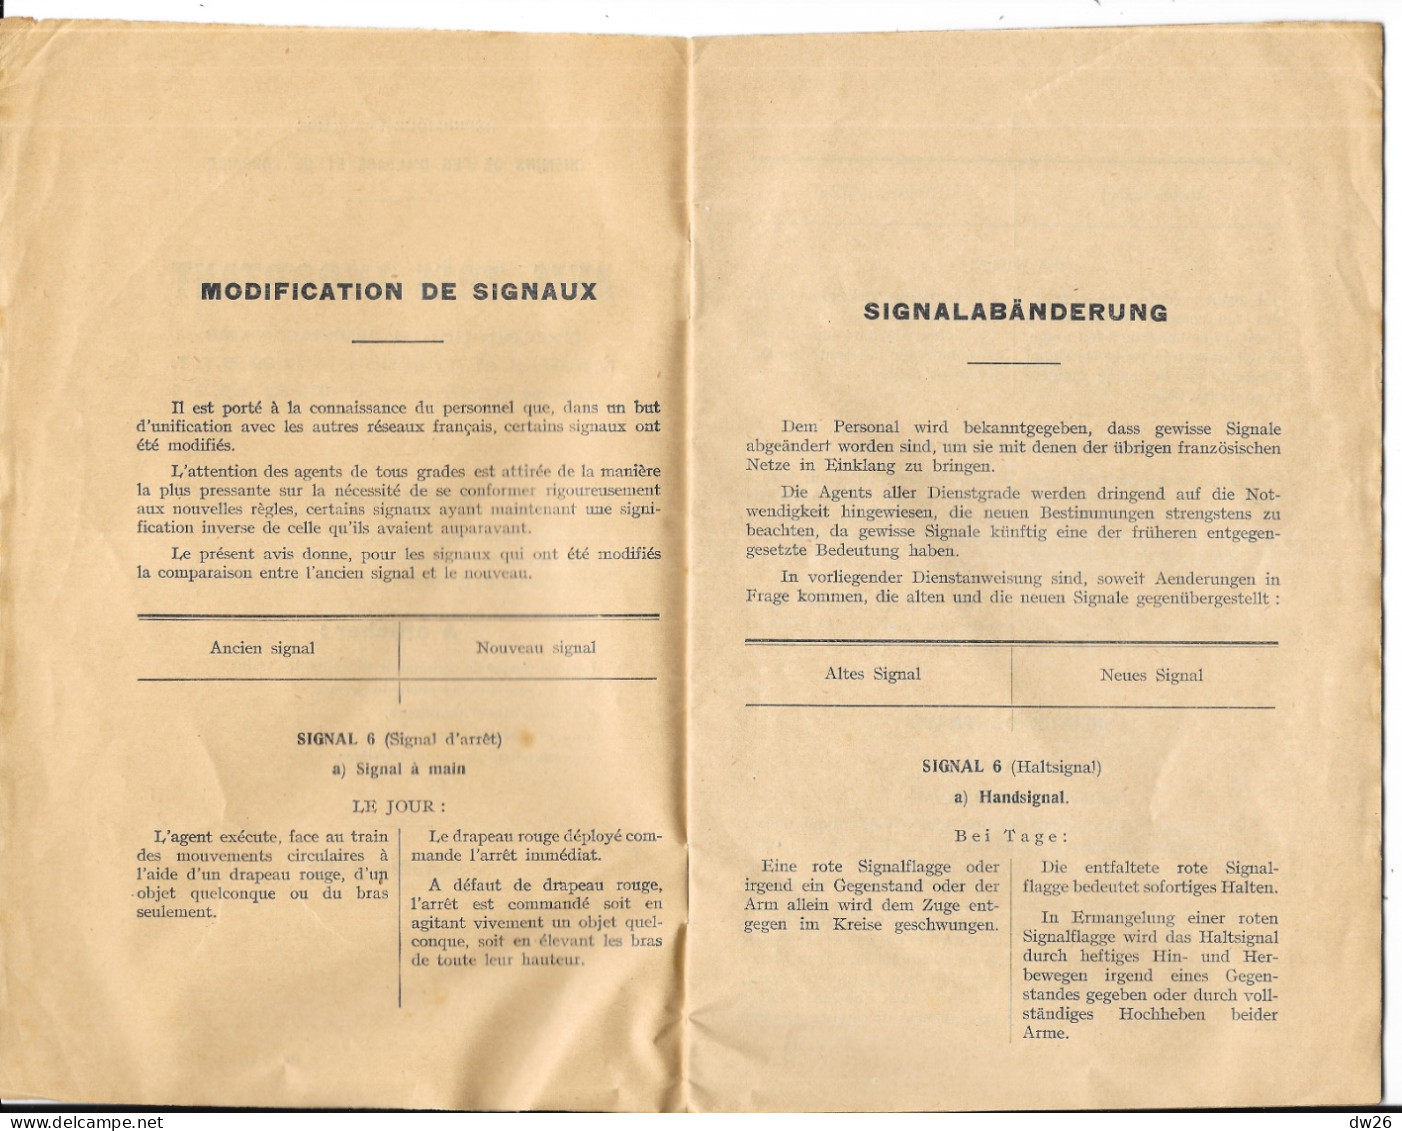 Chemins De Fer D'Alsace Et De Lorraine - Livret: Avis Très Important à Distribuer Aux Agents Cheminaux 1932 - Eisenbahnverkehr